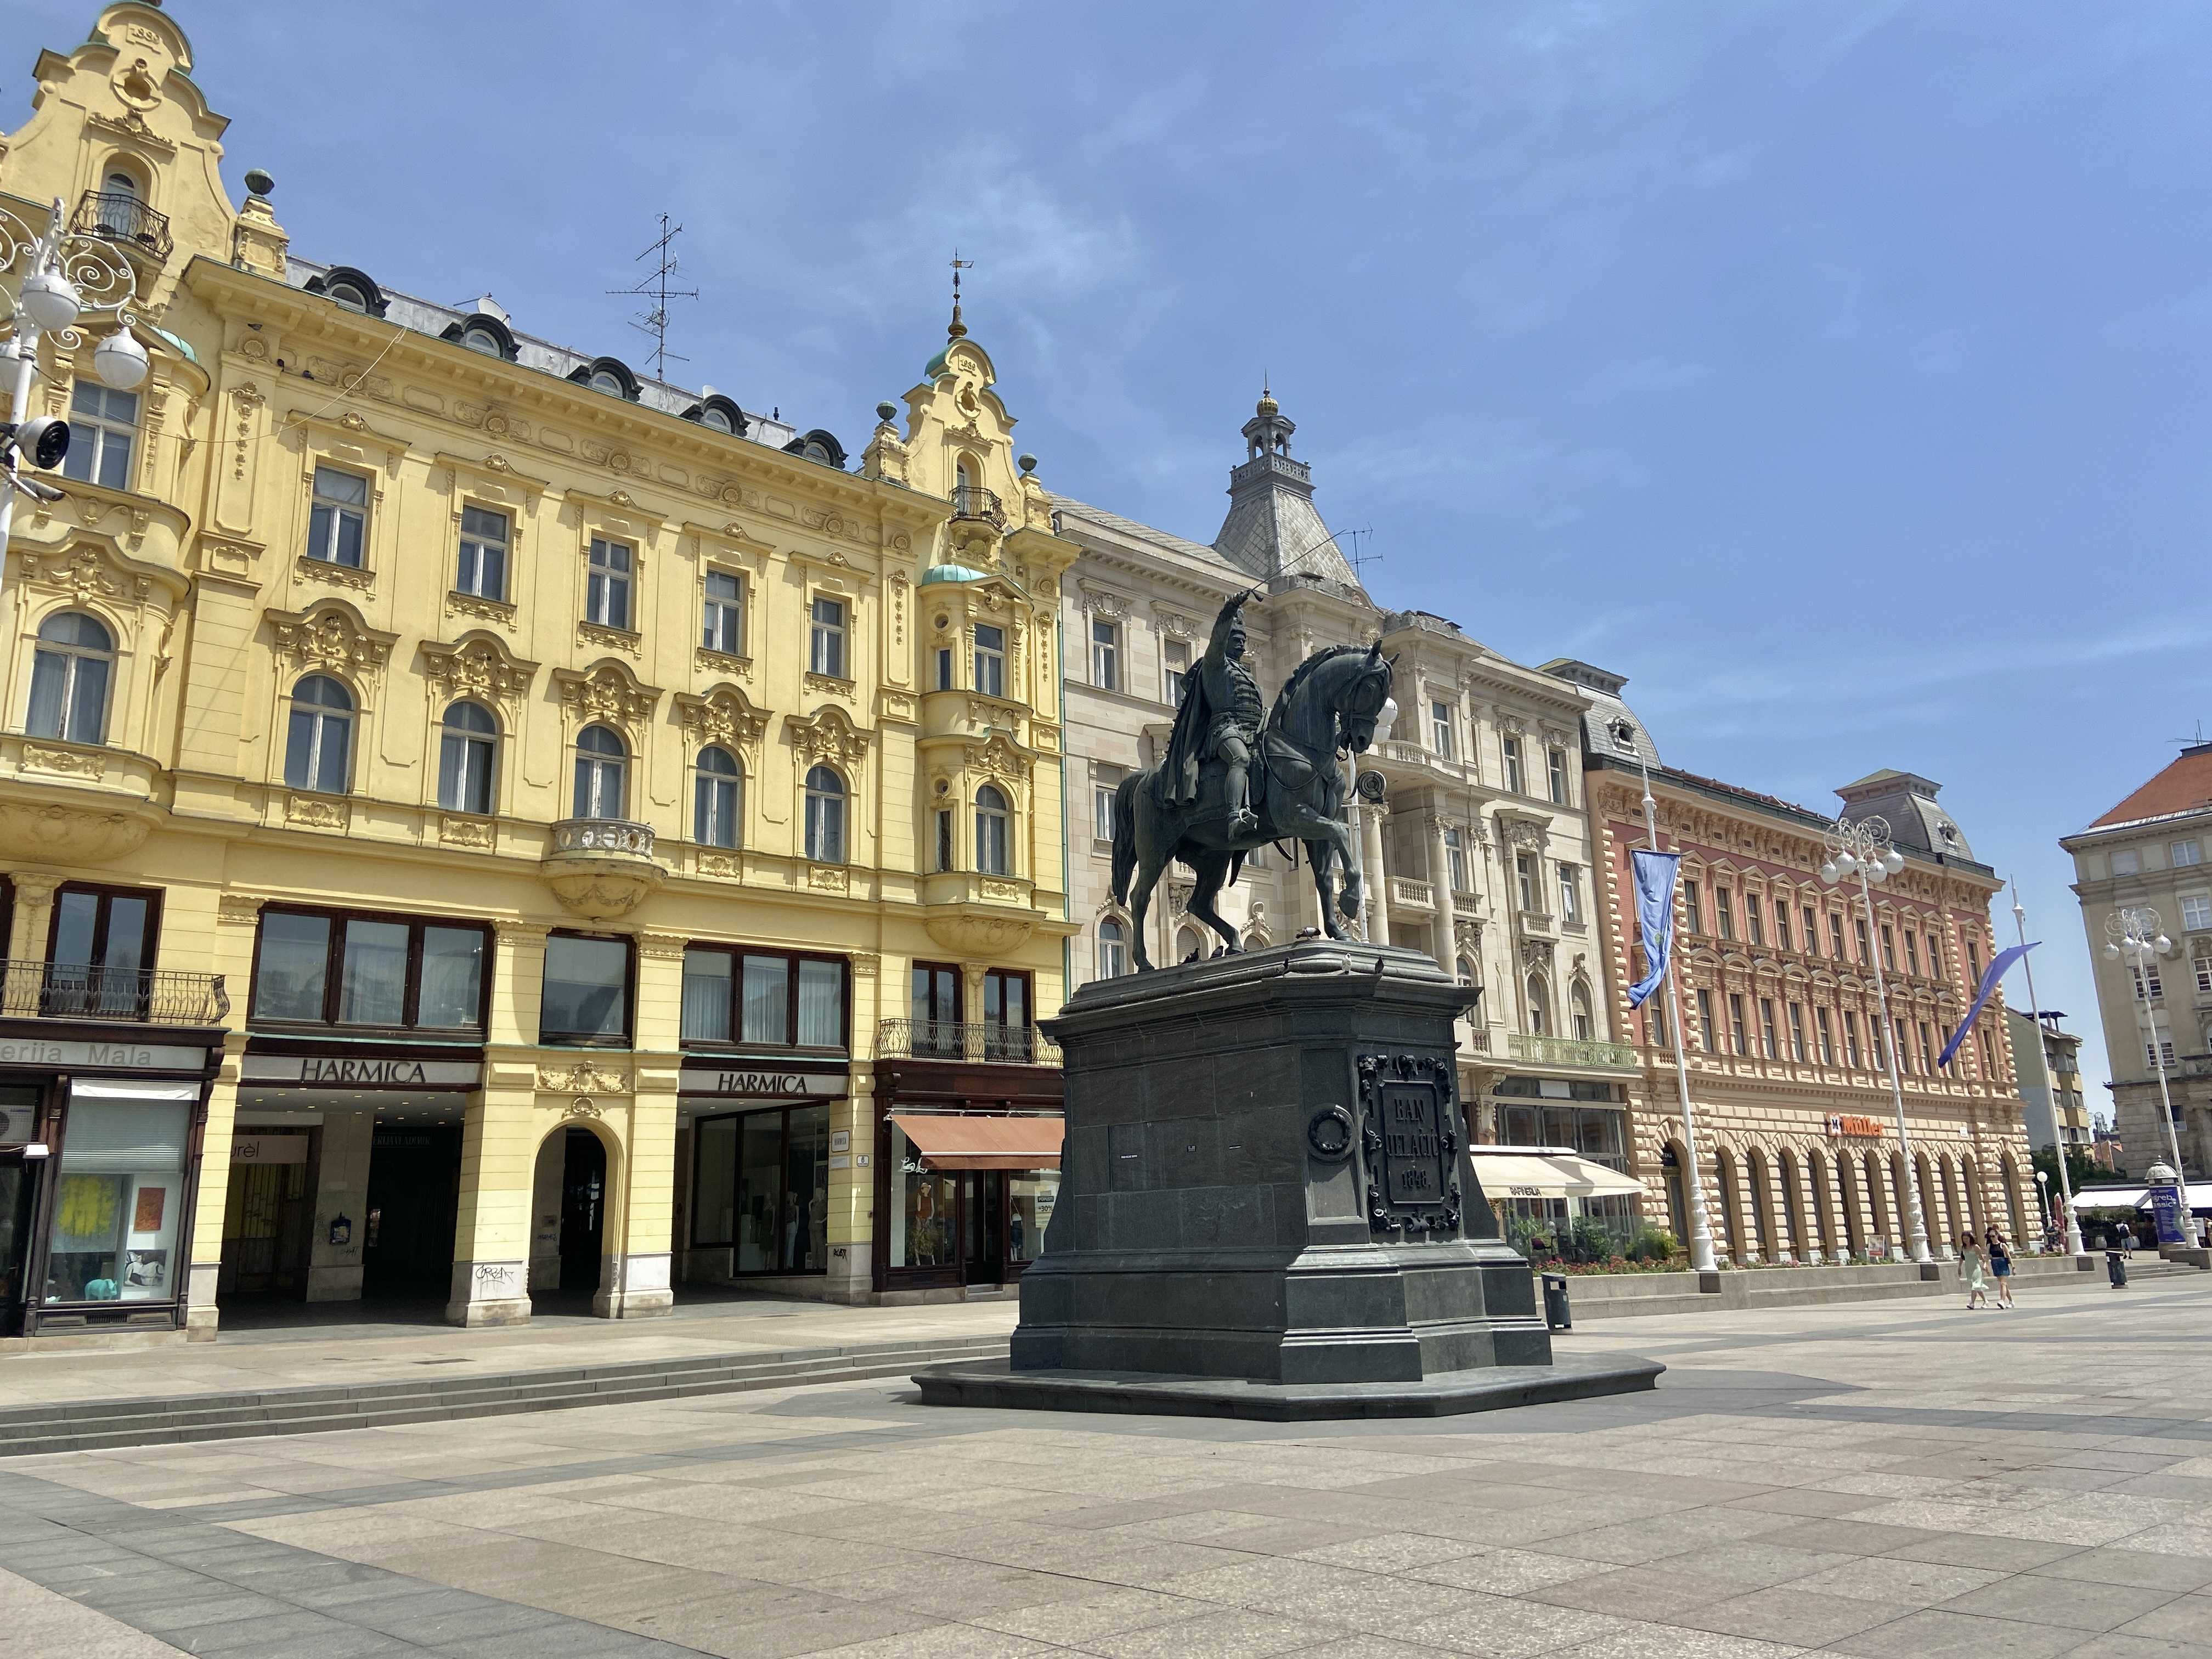 Ban Jelačić Square (Trg bana Josipa Jelačića), Zagreb